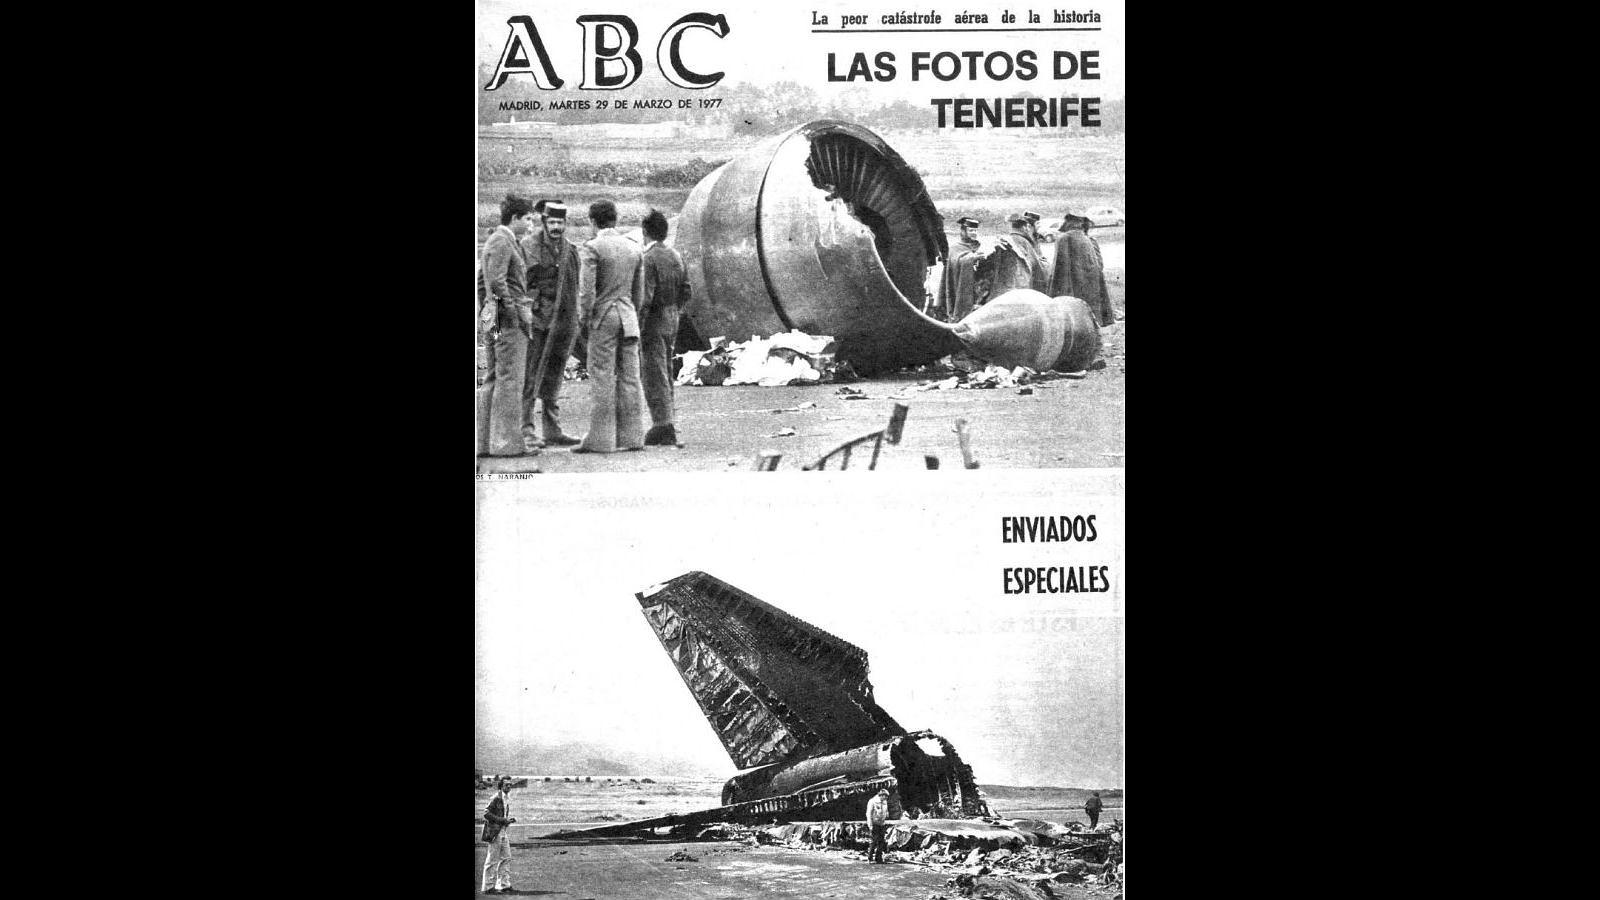 Portada de ABC de la catástrofe del Aeropuerto de Los Rodeos, publicada el 29 de marzo de 1977